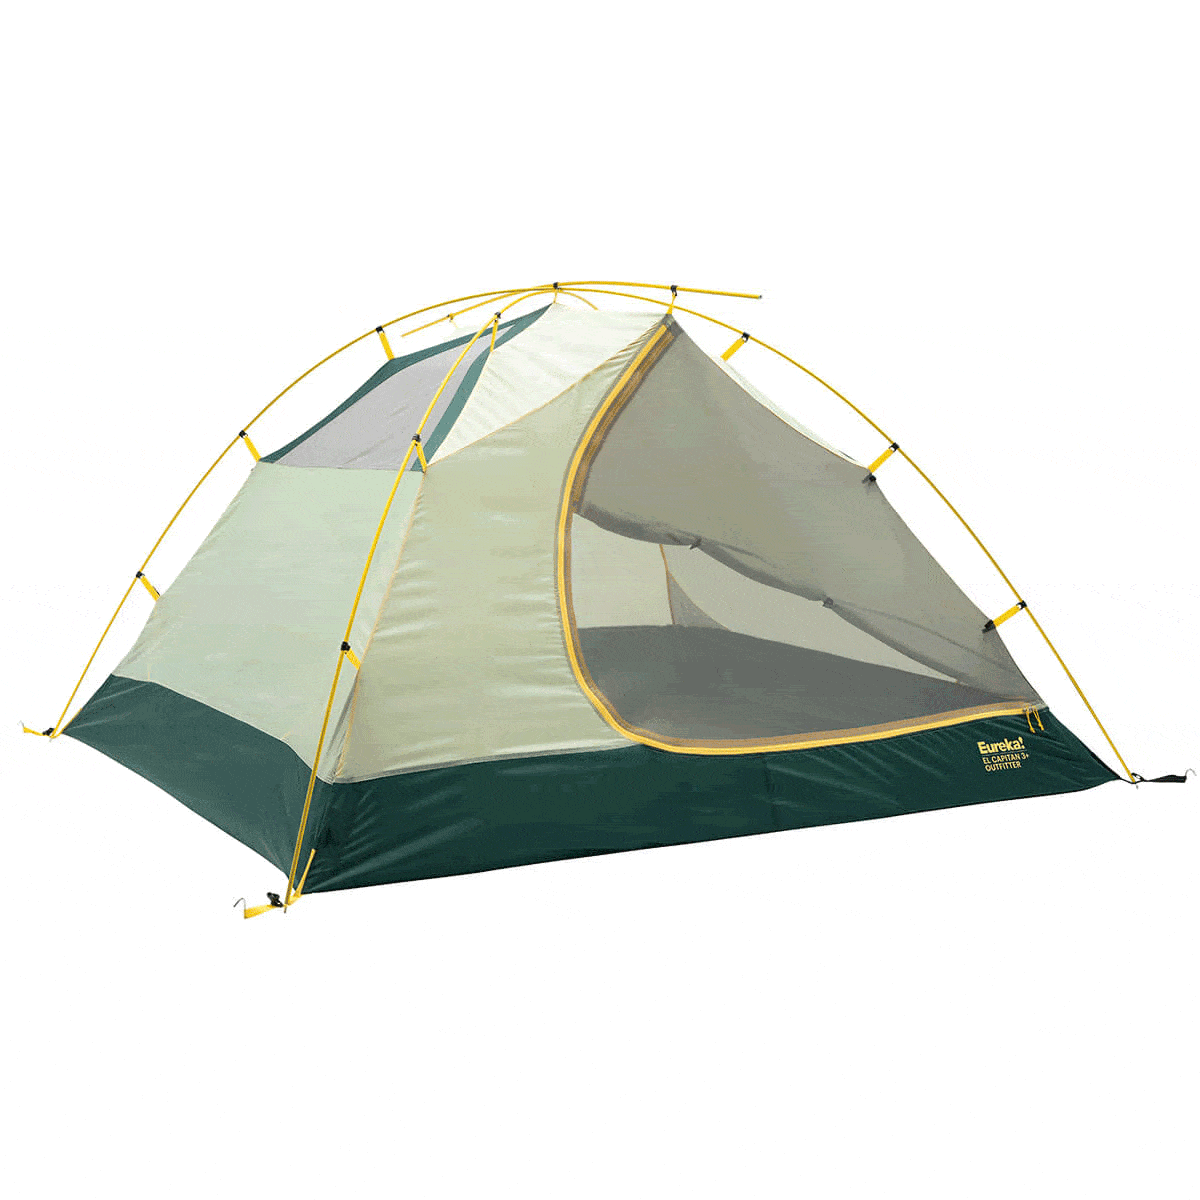 Eureka! El Capitan 3+ Outfitter Tent with screen door opening